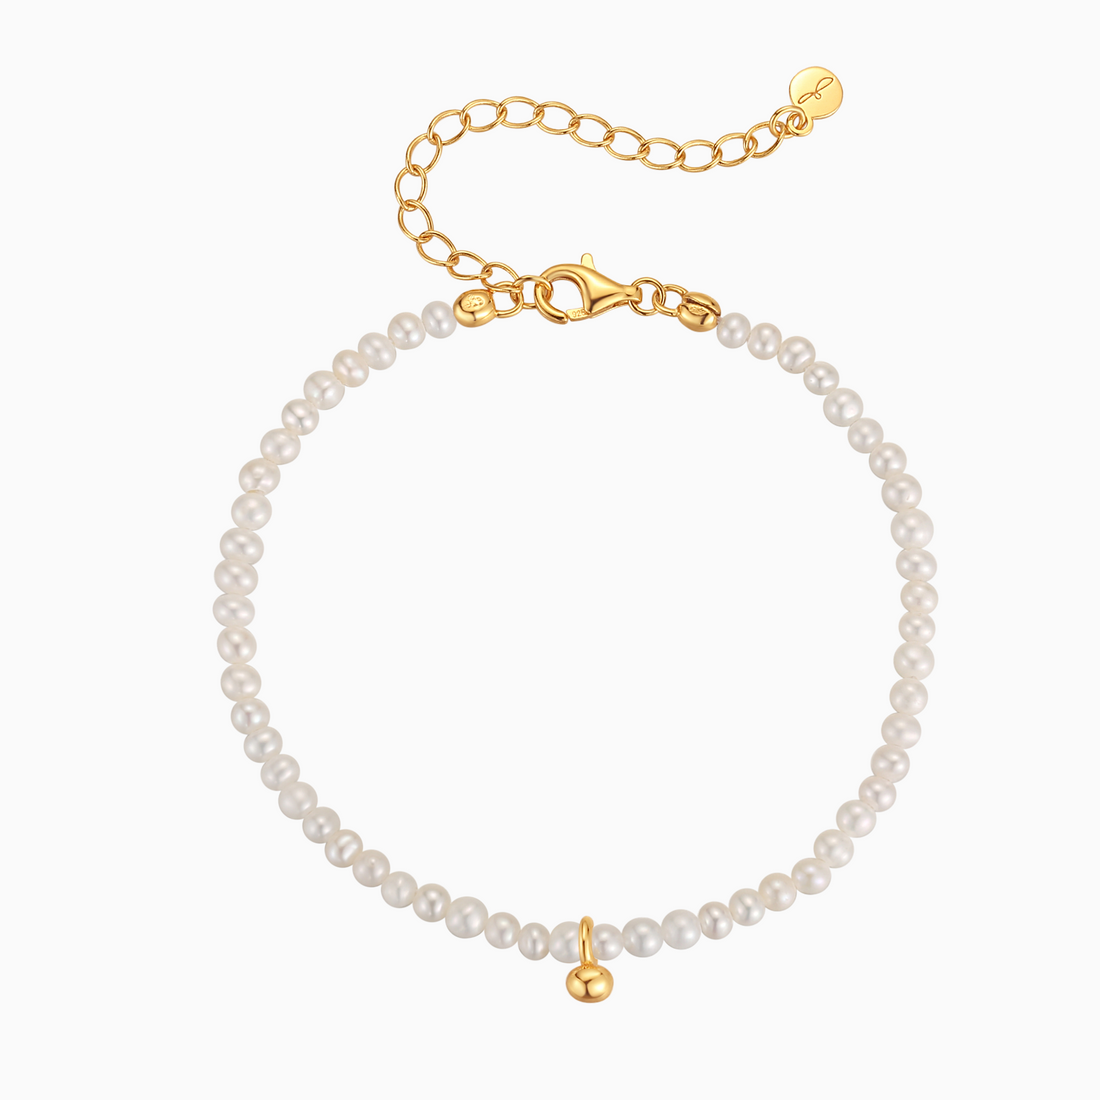 Celine Bracelet - Solid Gold